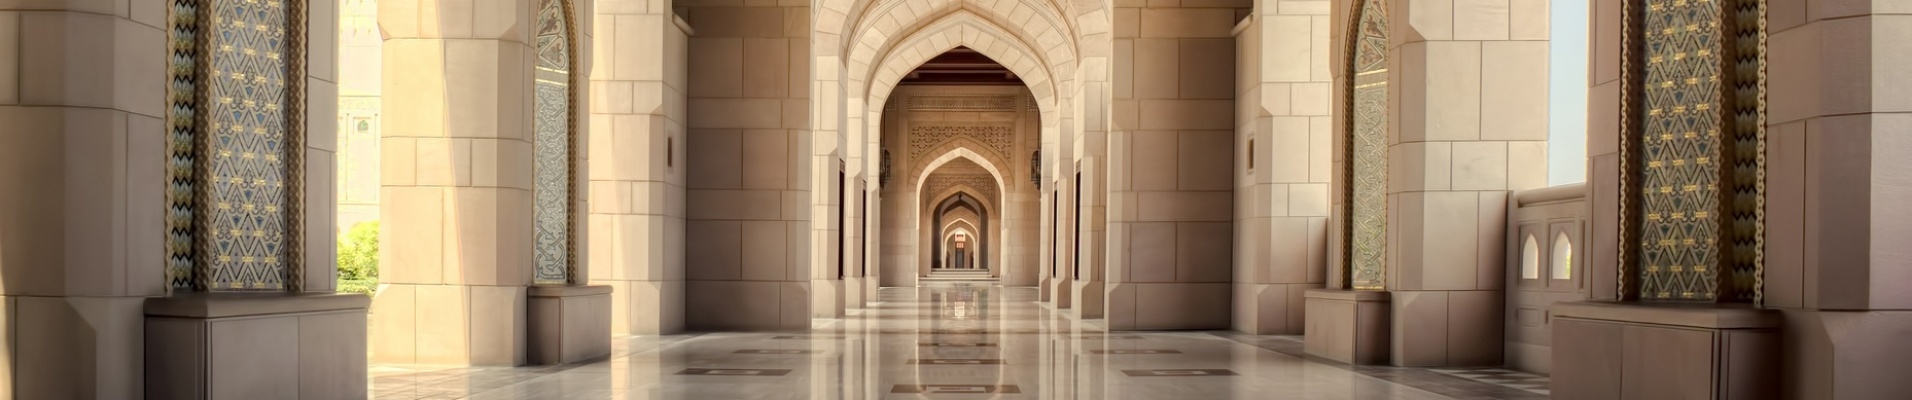 couloir de palais omanais